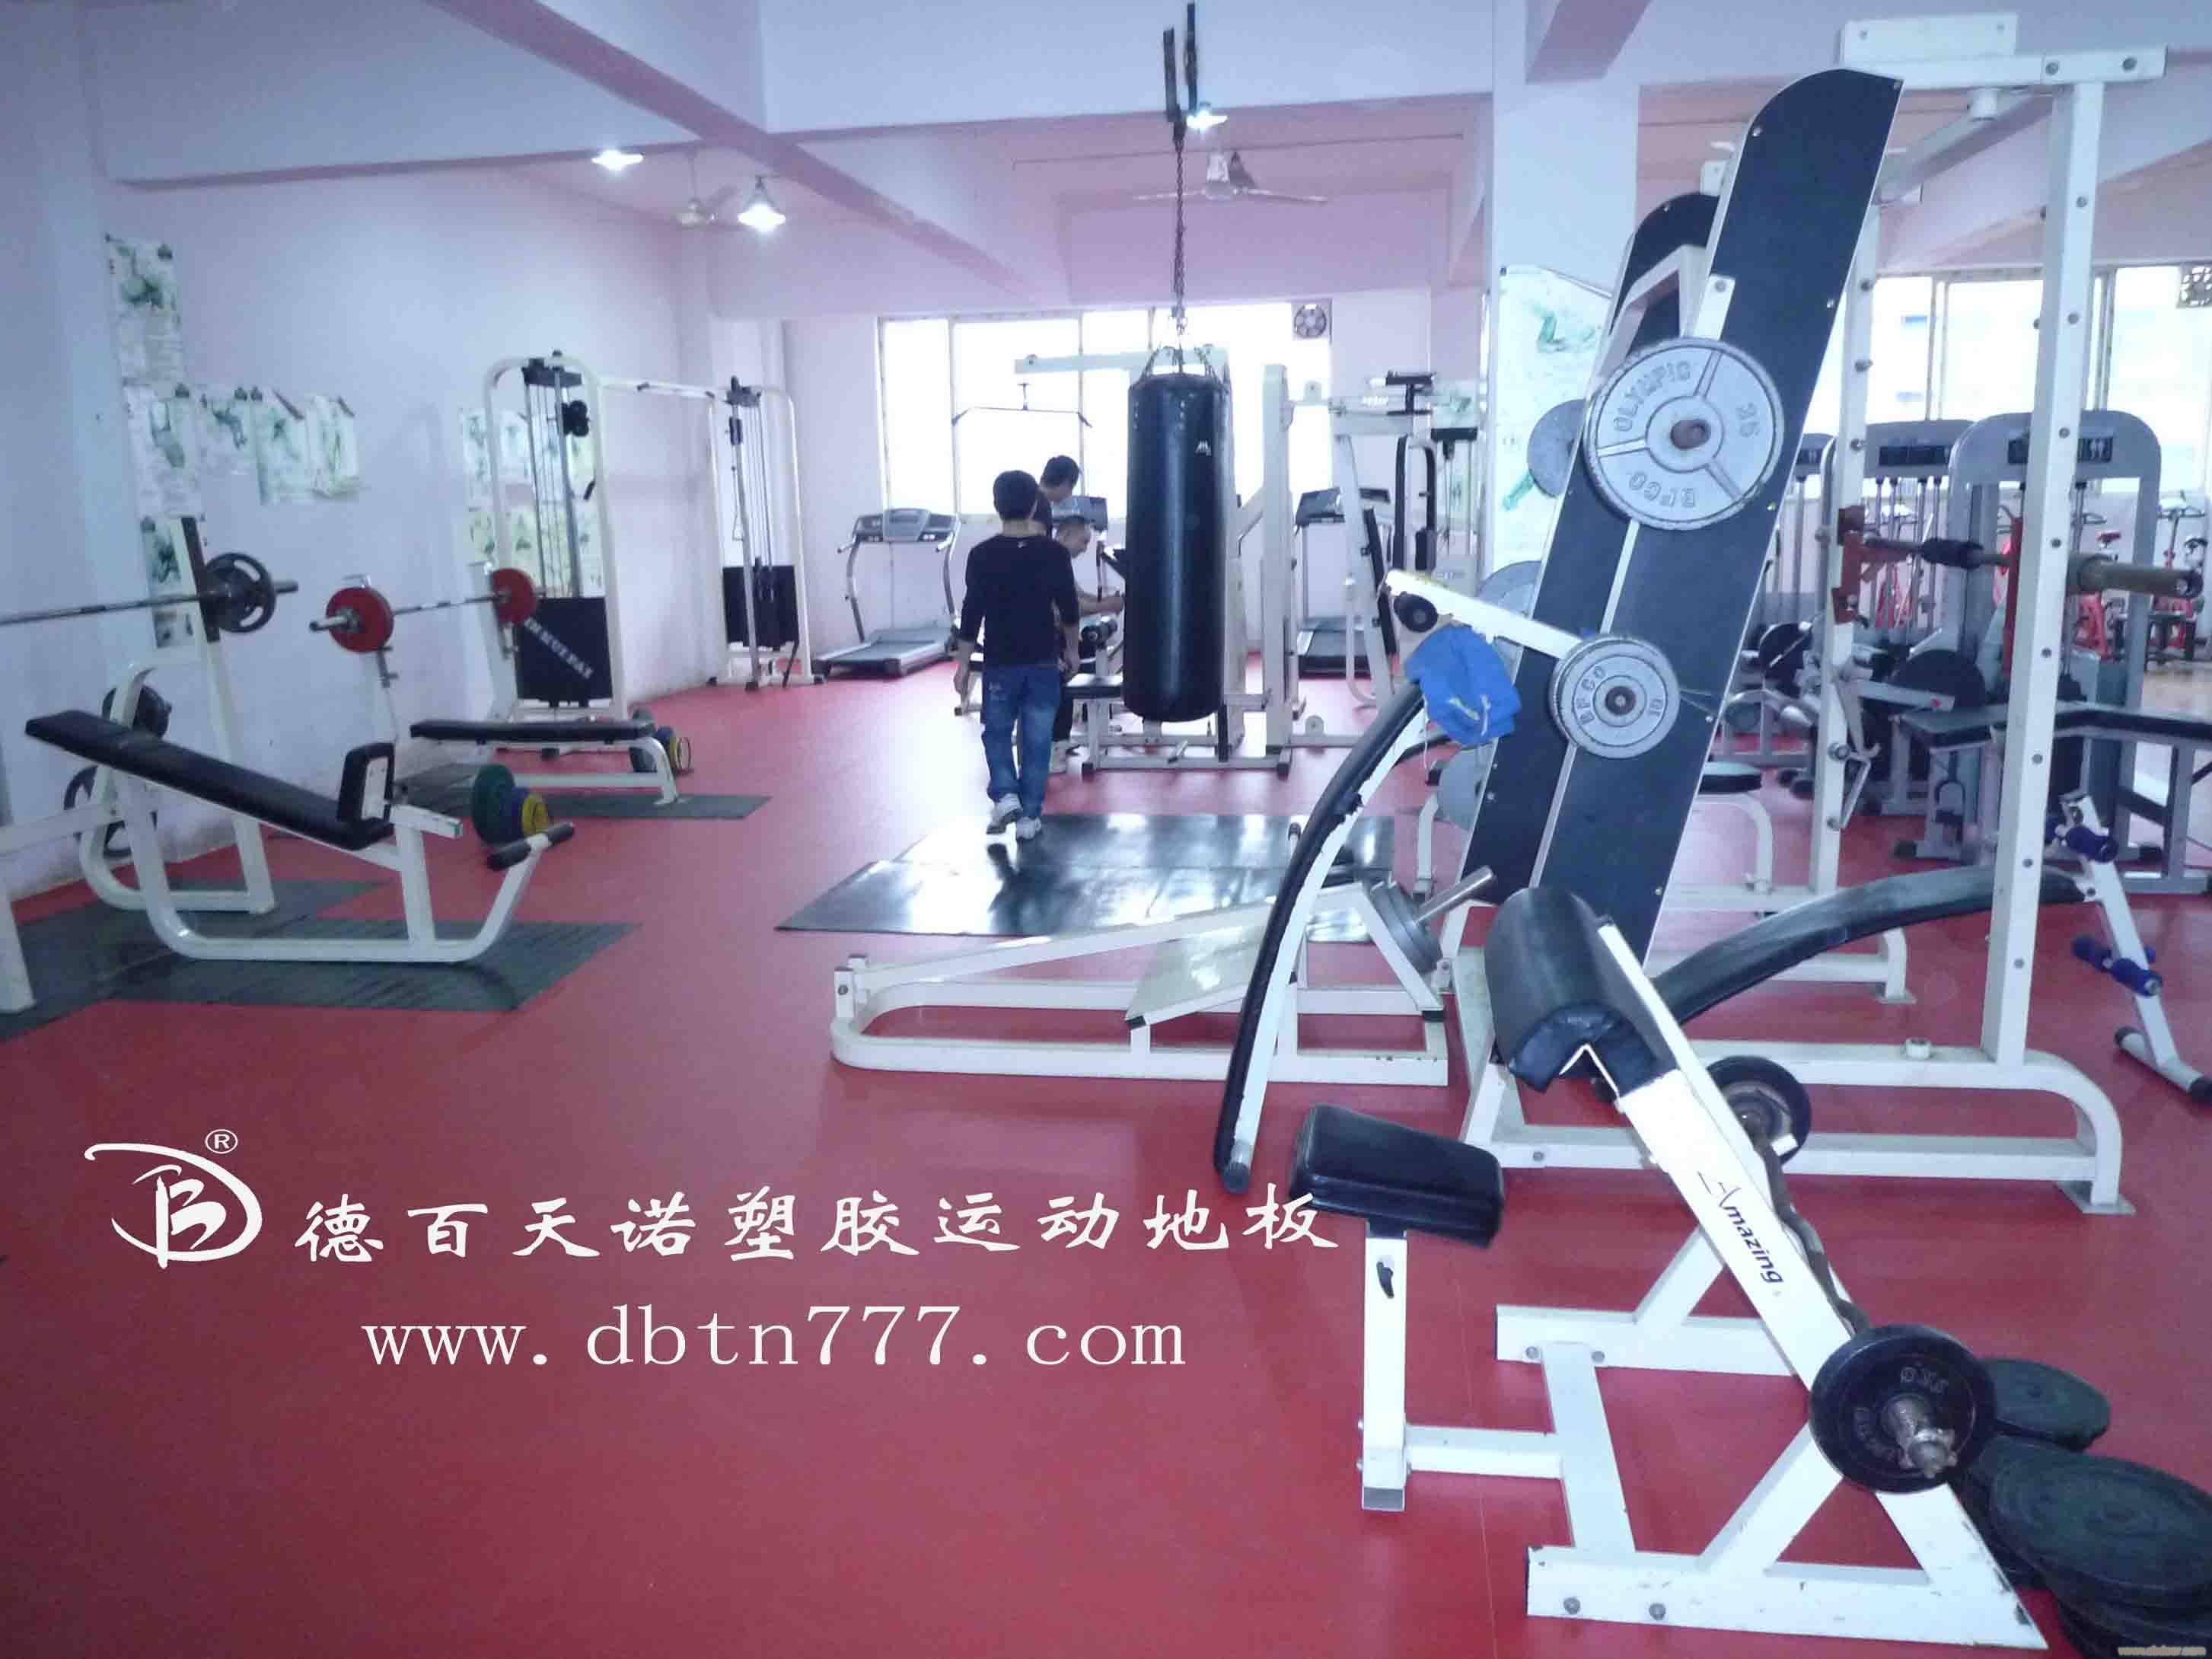 石家庄/健身俱乐部/PVC塑胶运动地板�